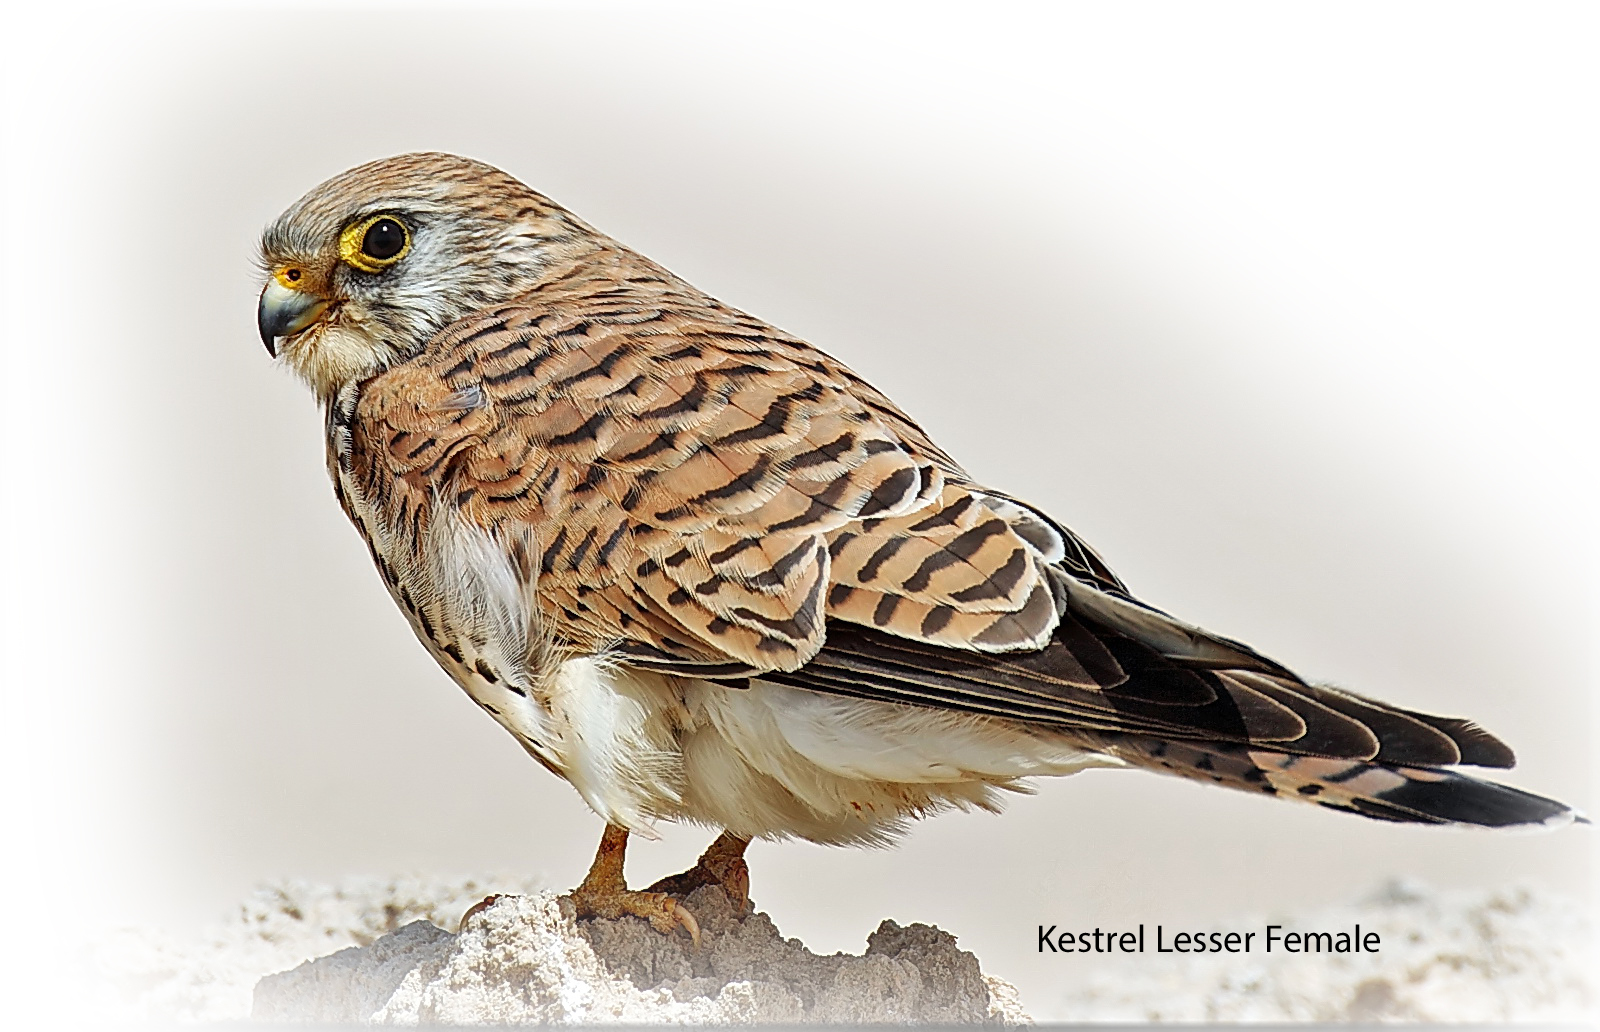 Kestrel Lesser Female